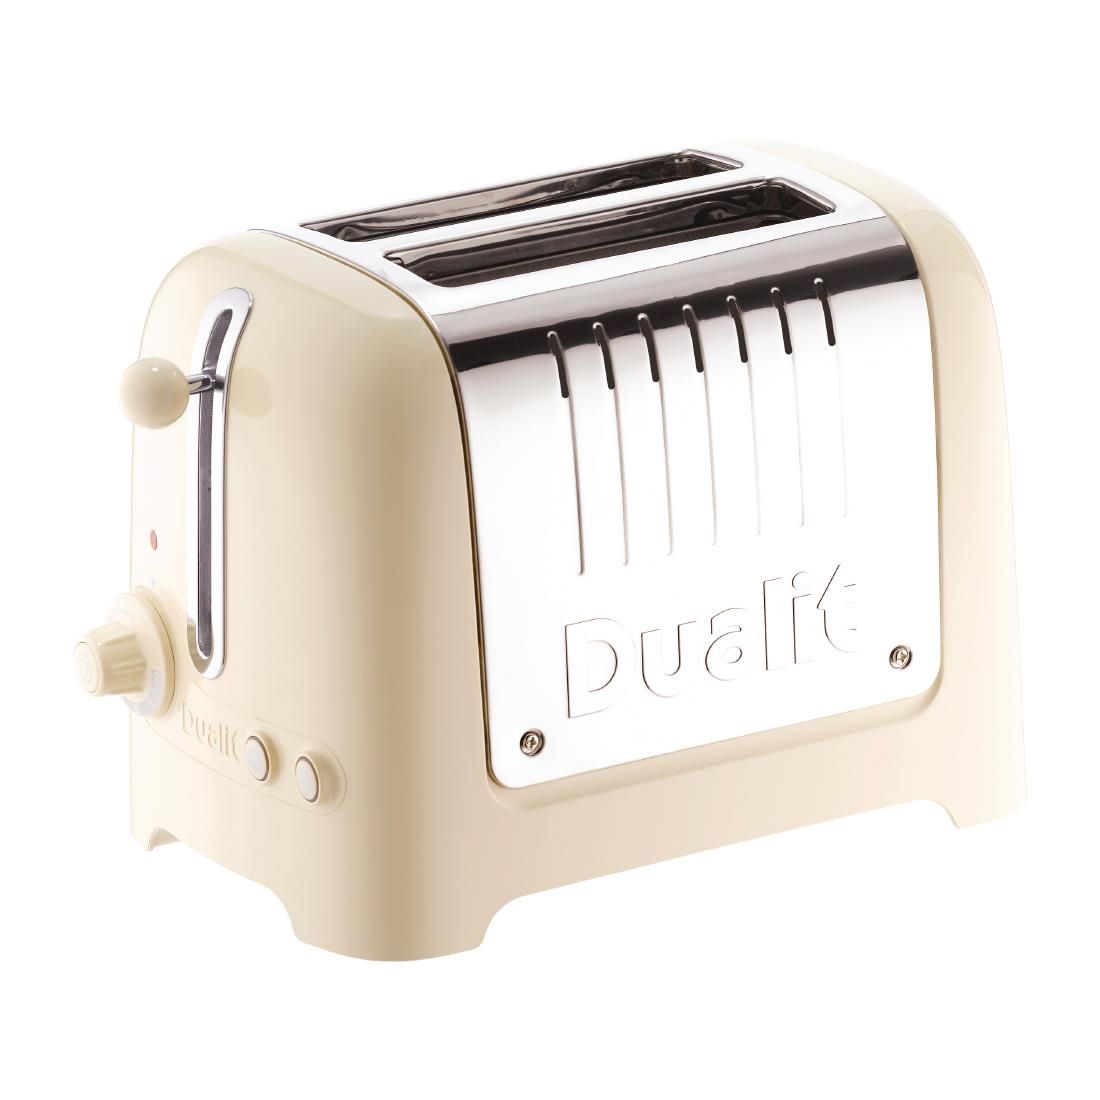 Dualit 2 Slice Lite Toaster Cream 26202 - CC801 Toasters Dualit   